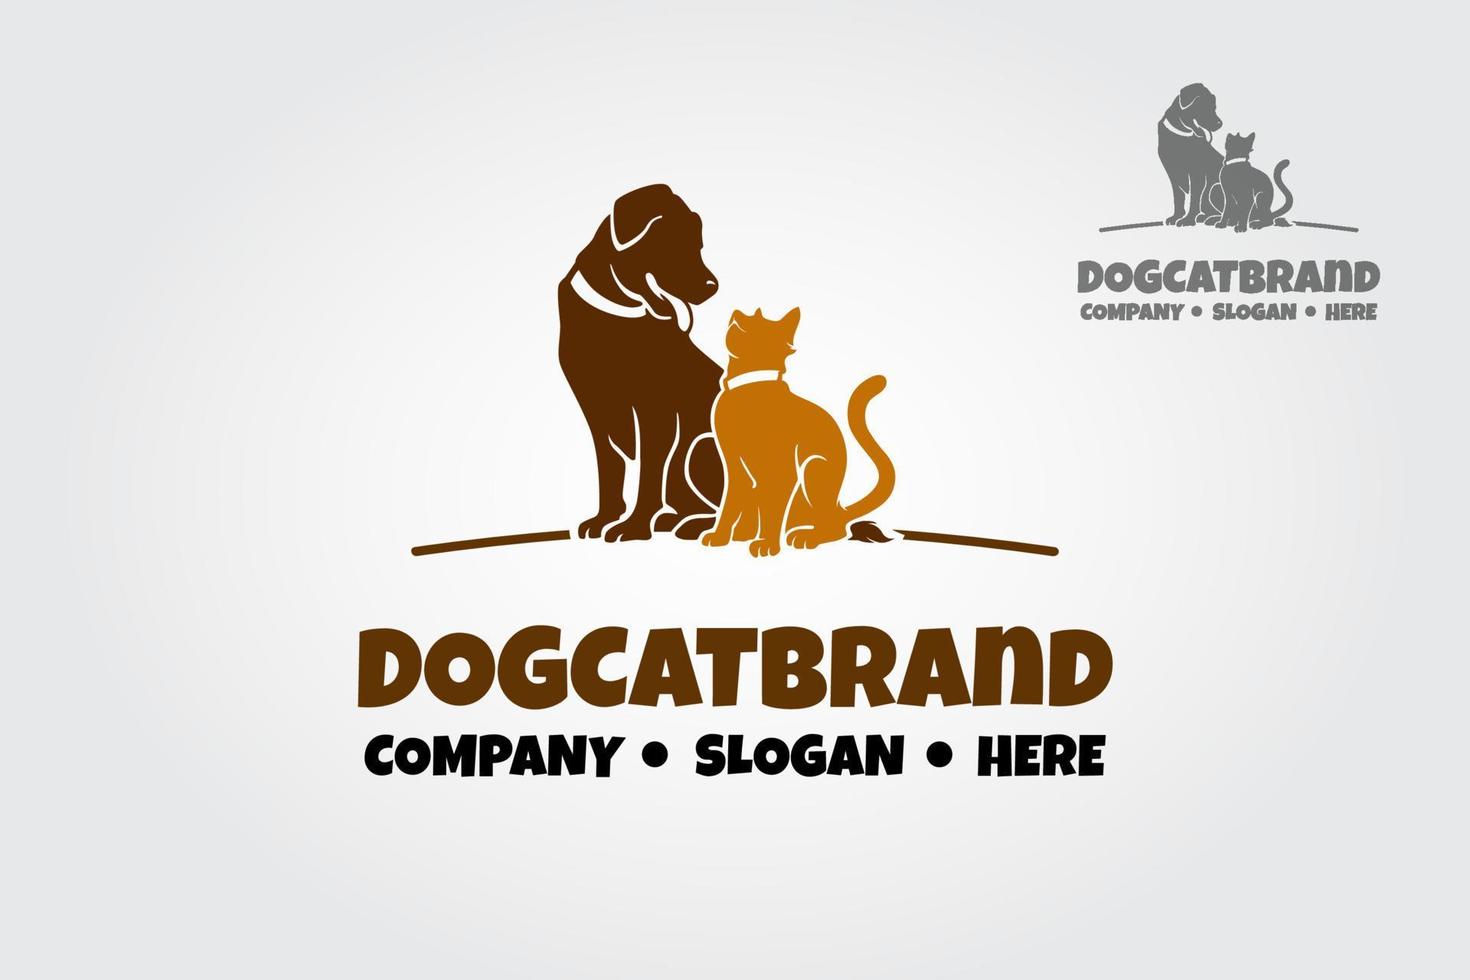 logotipo de vetor da marca dogcat. design de logotipo elegante, moderno, agradável e claro pode ser usado para muitos tipos de projeto, negócios, comunidade, pet shop, etc.